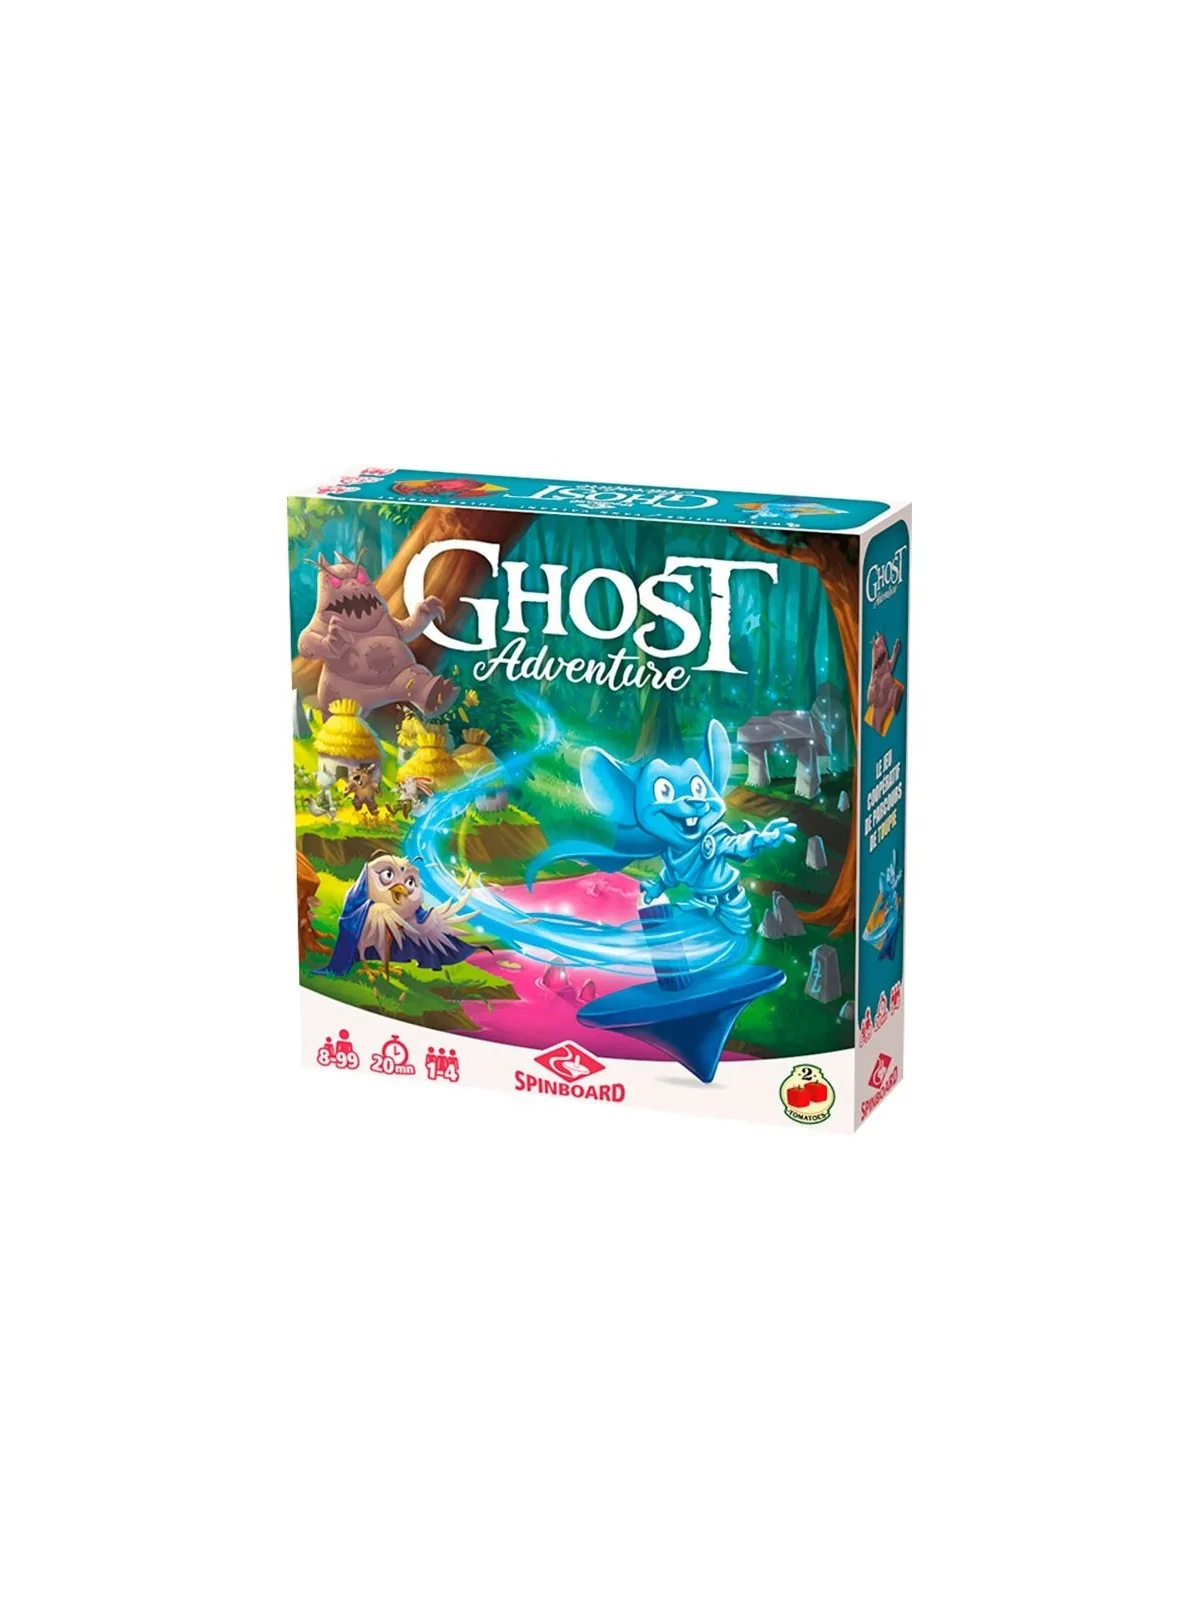 Comprar Ghost Adventure barato al mejor precio 27,00 € de Two Tomatoes